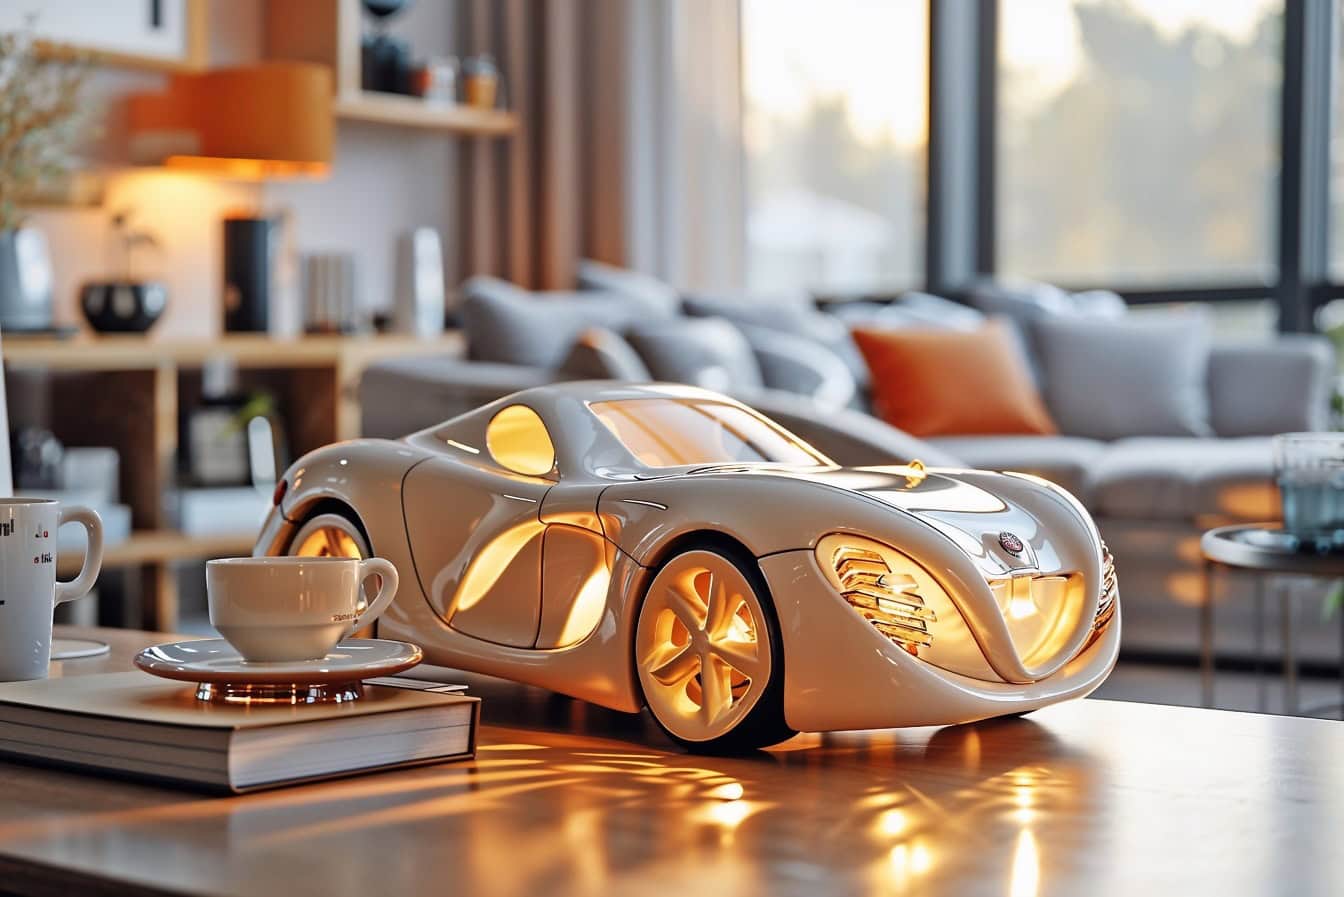 Leuchtende Spielzeuglampe in Form eines modernen Sportwagens auf dem Wohnzimmertisch